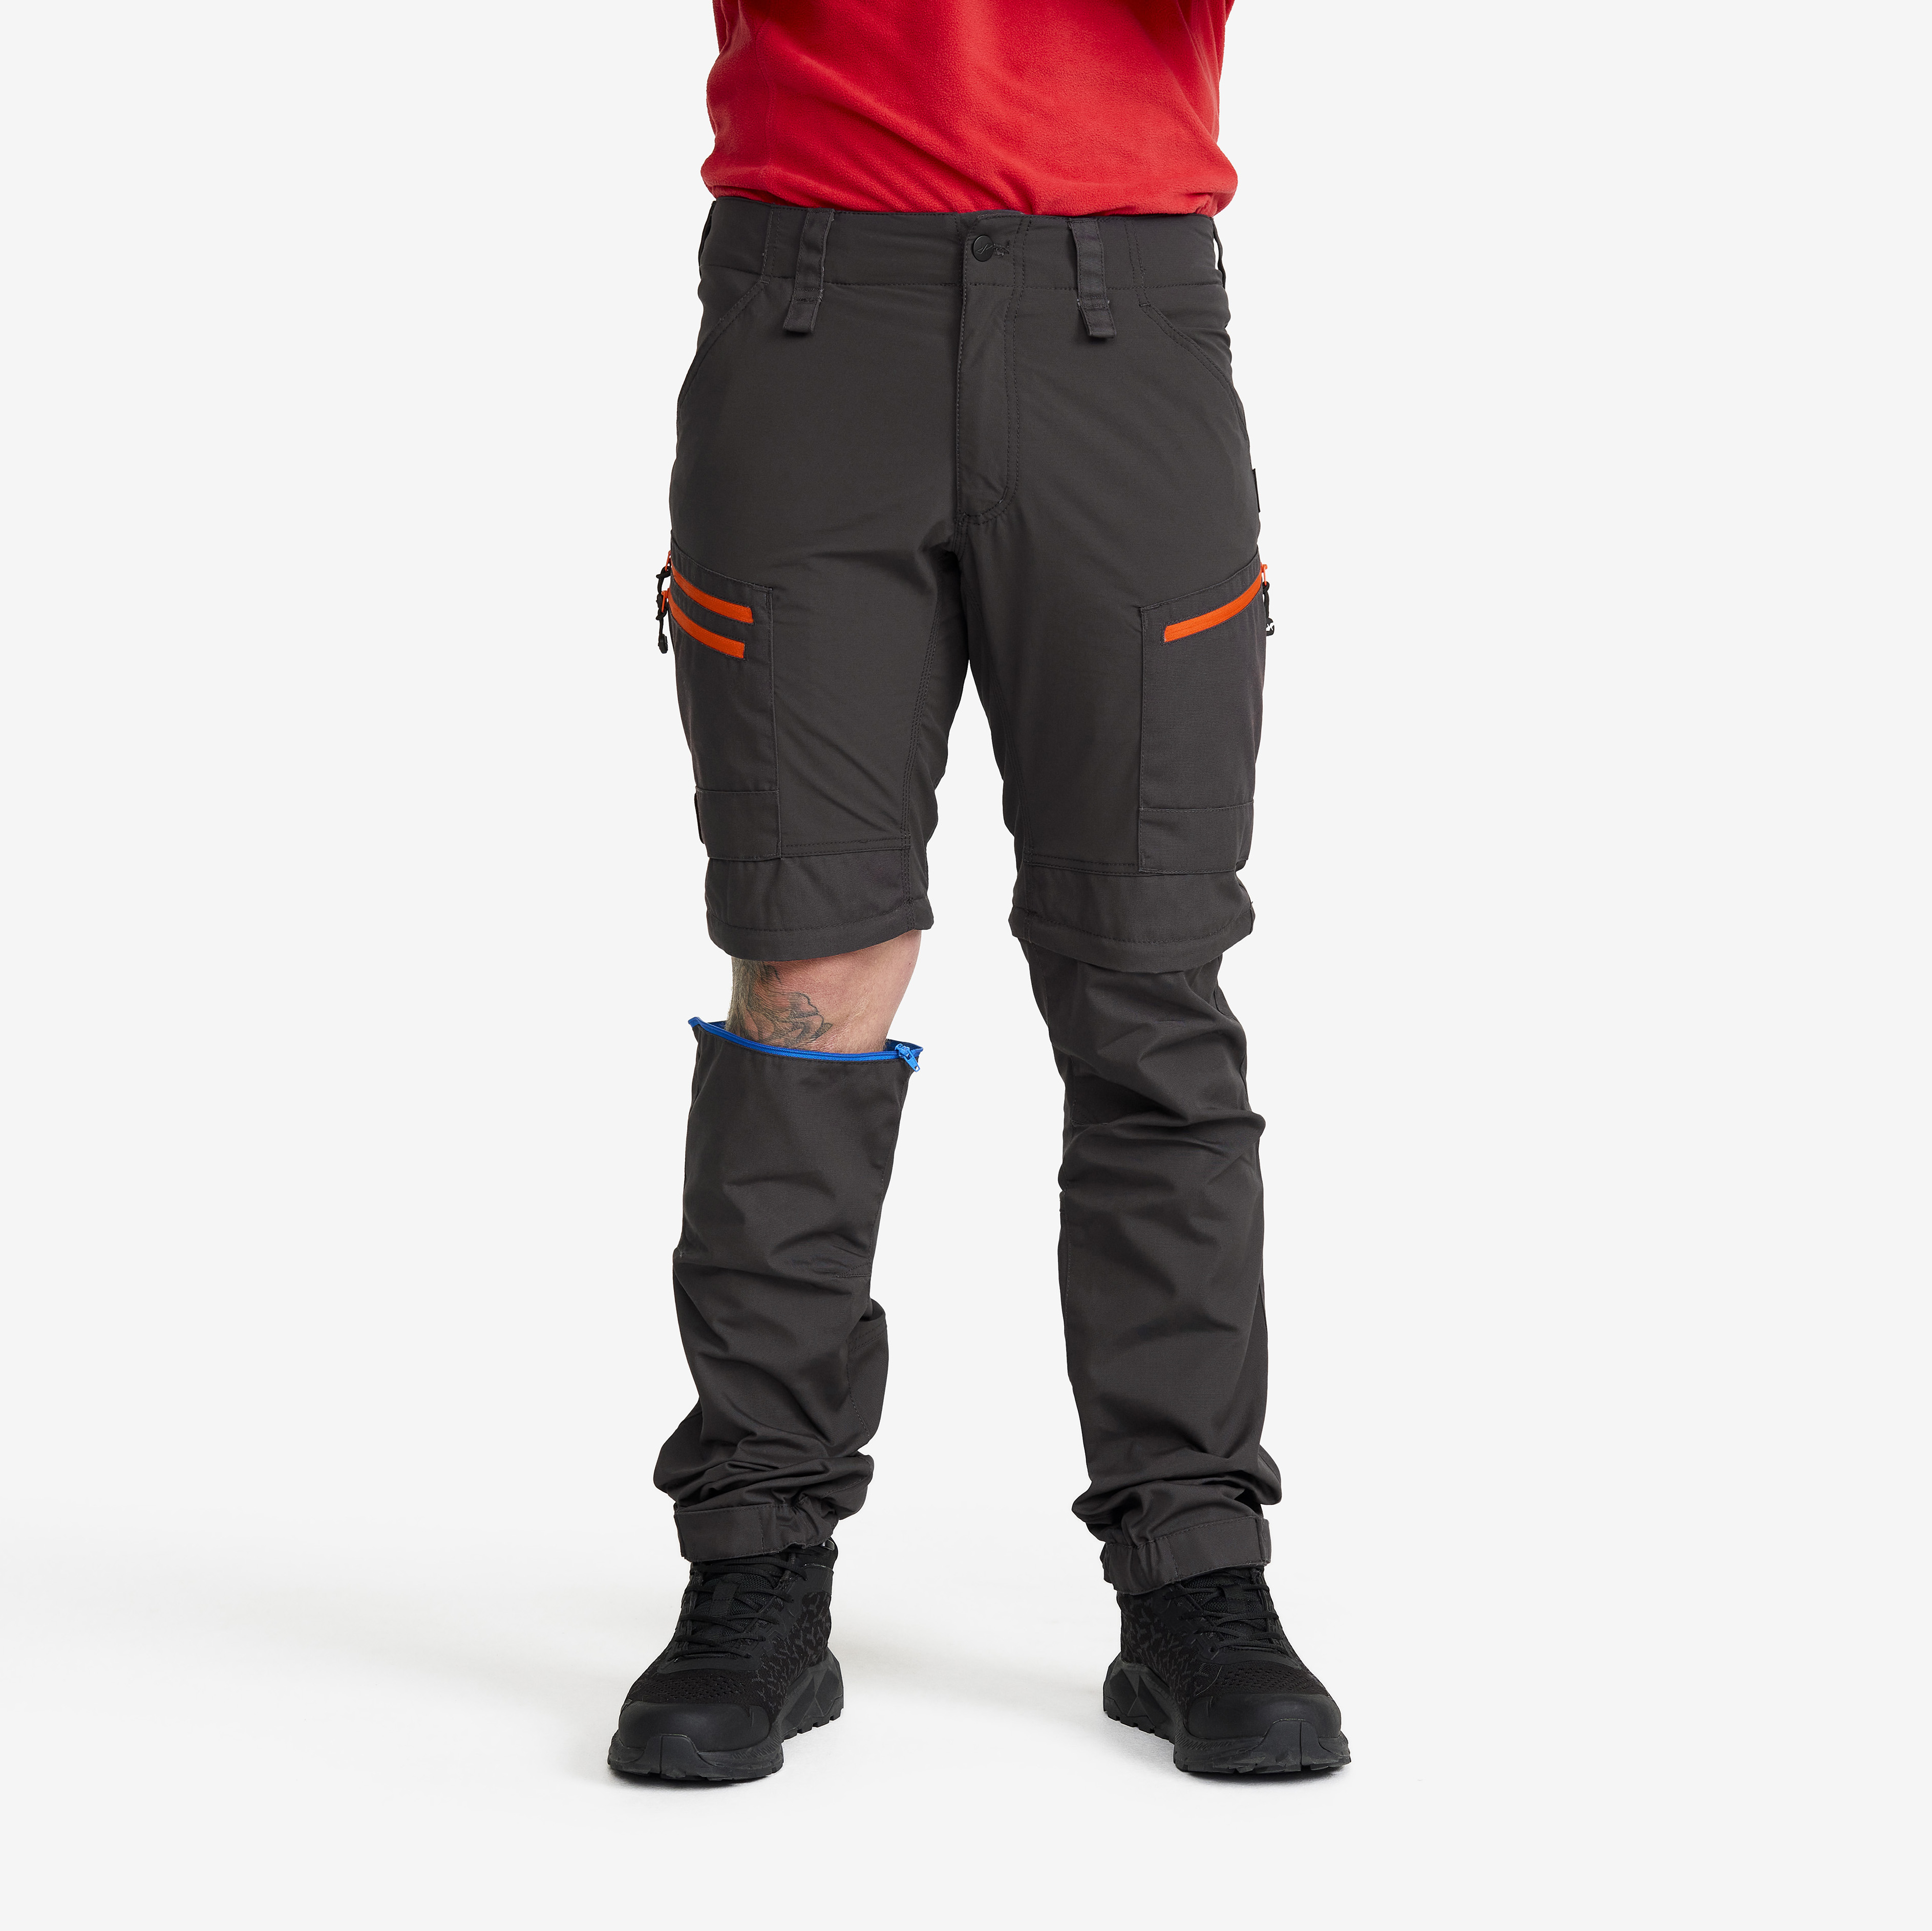 RVRC GP Pro Zip-off Pants Miehet Grey/Orange Koko:M – Zip-off-housut